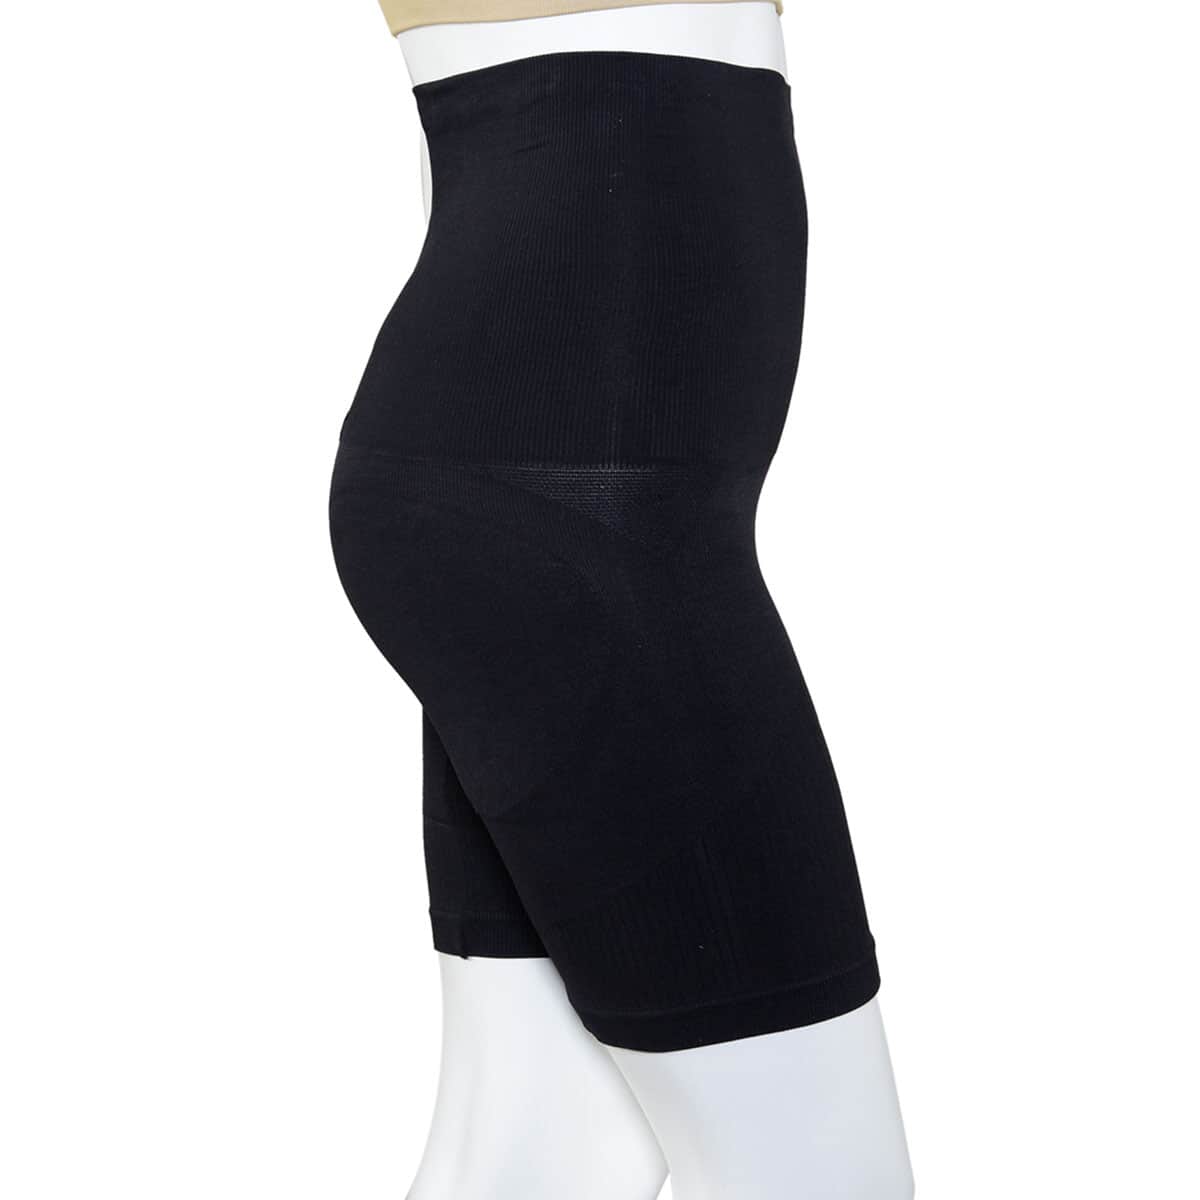 SANKOM Patent Mid-Thigh Shaper with Aloe Vera Fibers - L/XL | Black image number 2